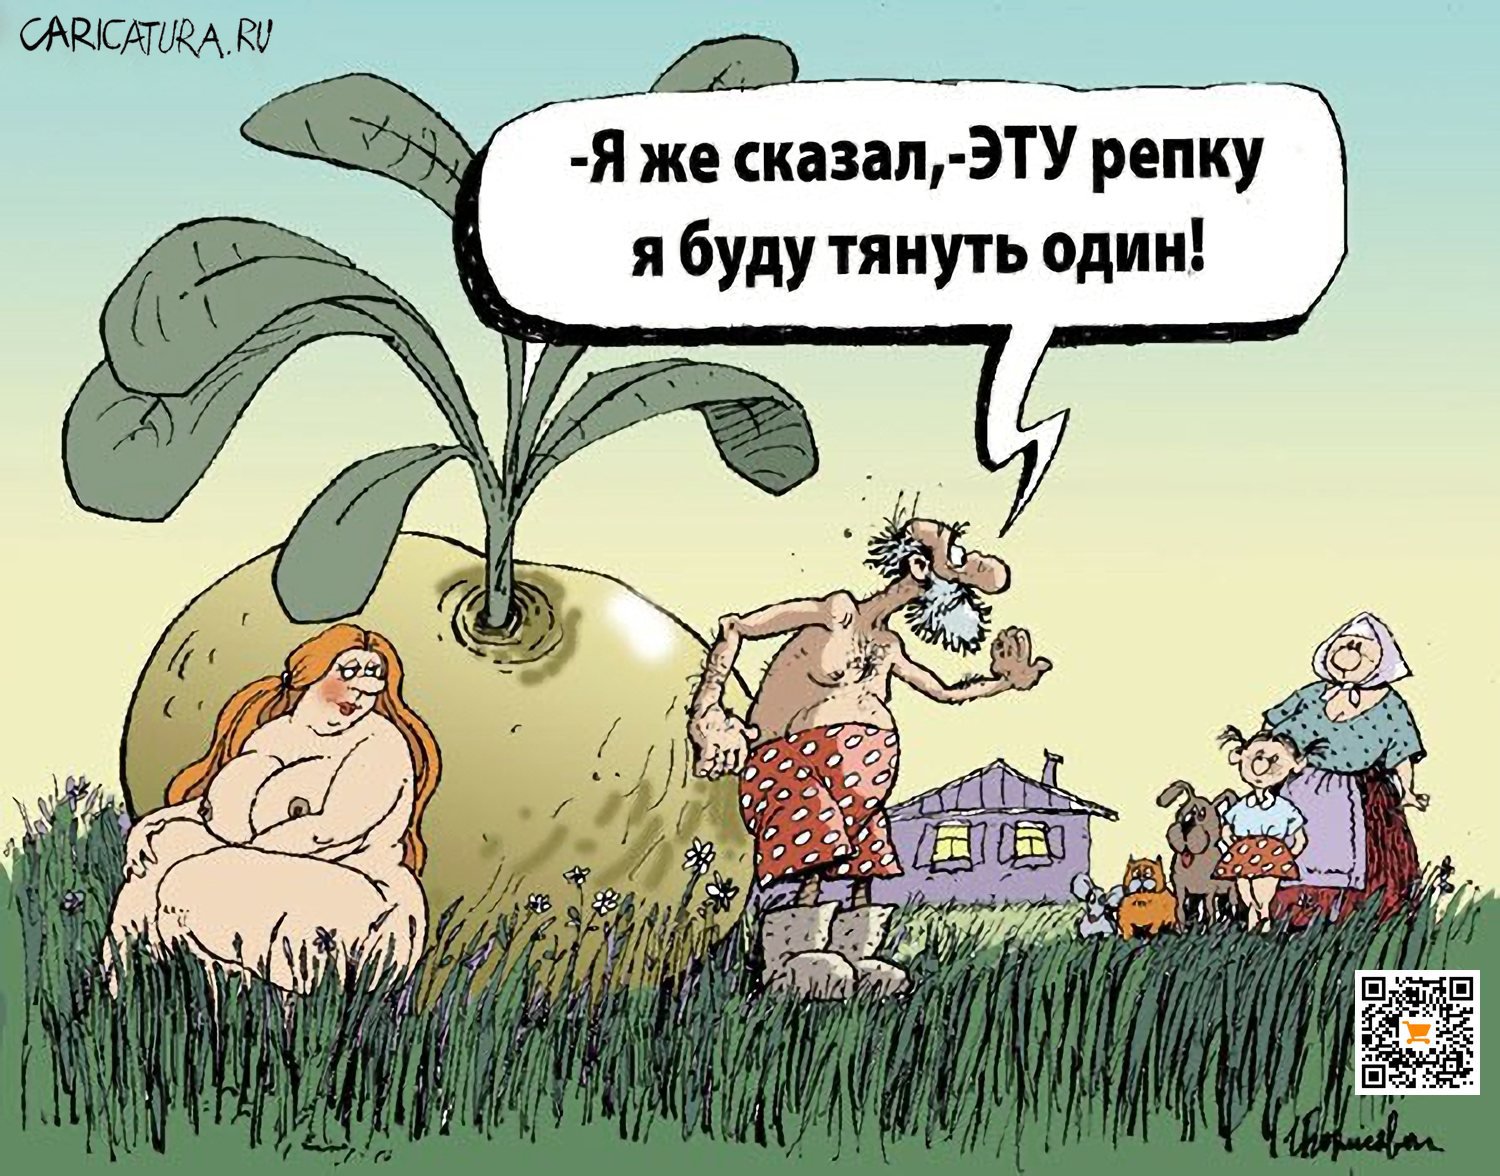 Карикатура "Репка", Игорь Елистратов